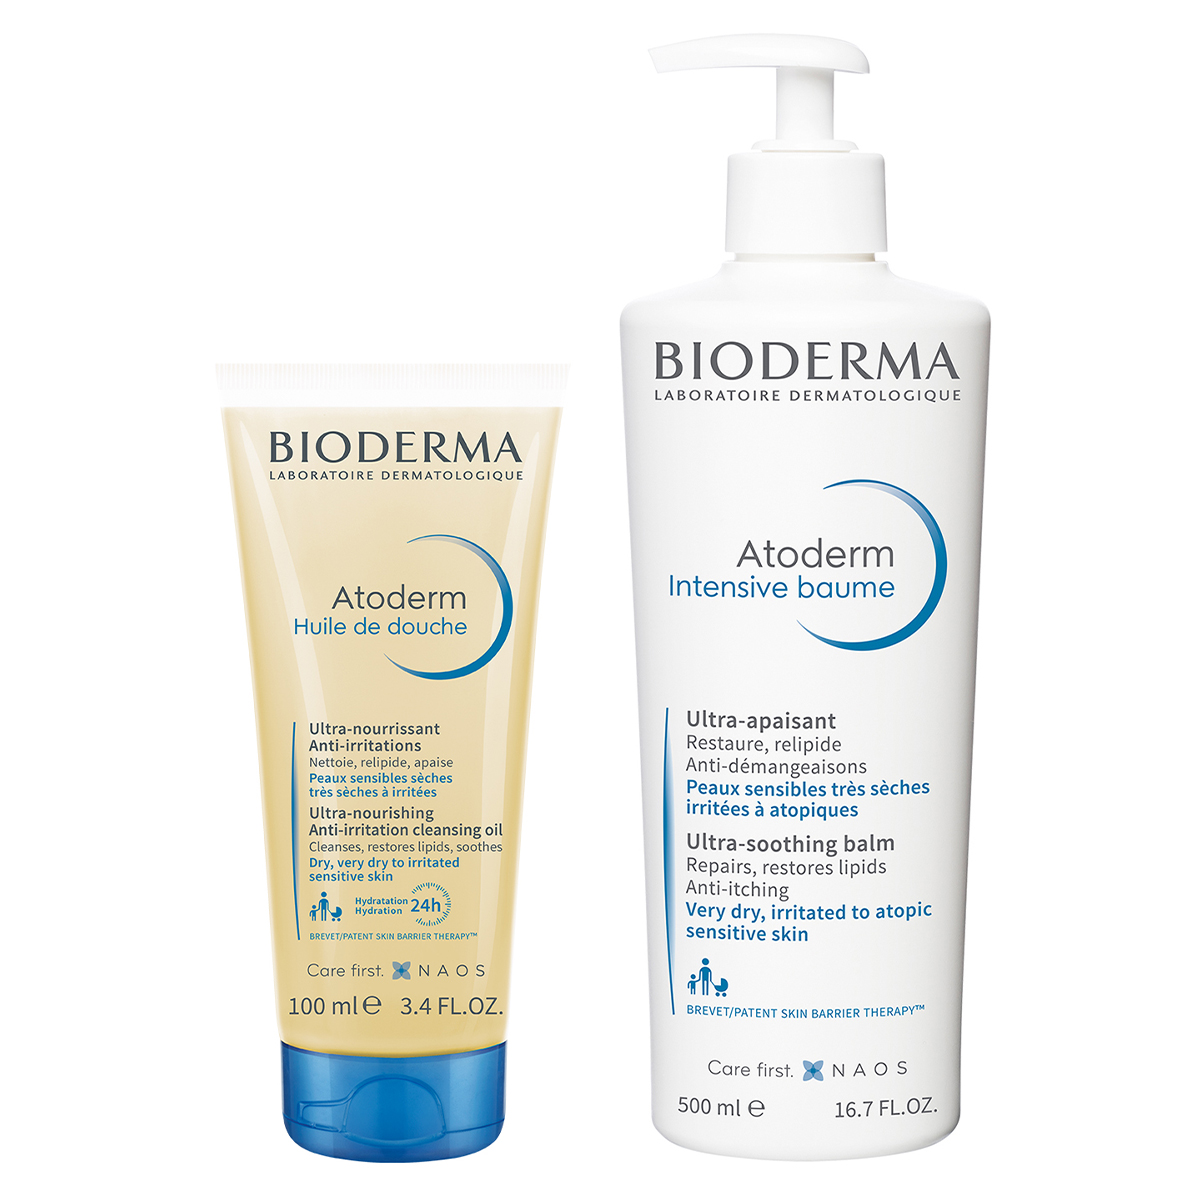 цена Bioderma Набор средств для сухой, чувствительной, атопичной кожи (Bioderma, Atoderm)